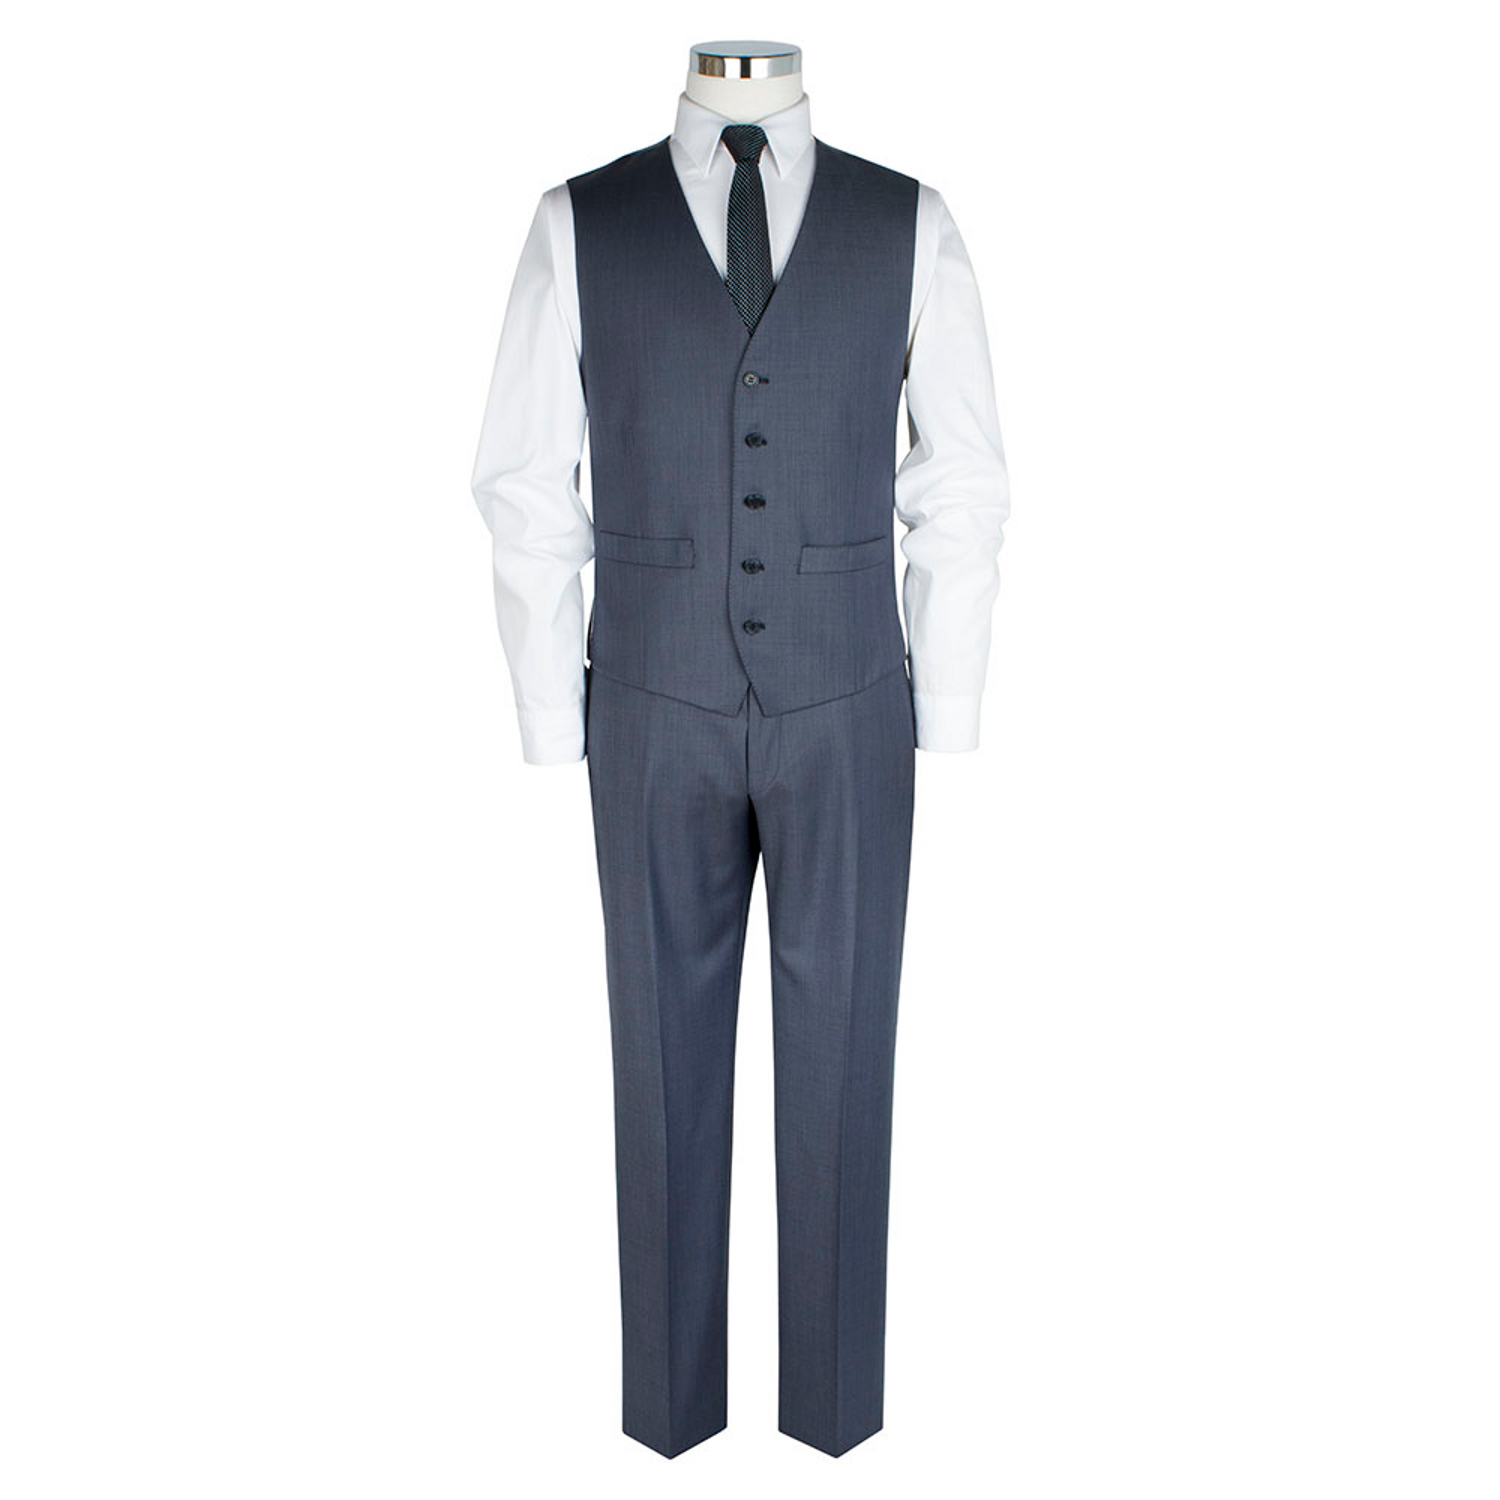 Sharkskin Pale Blue Waistcoat - Tom Murphy's Formal and Menswear